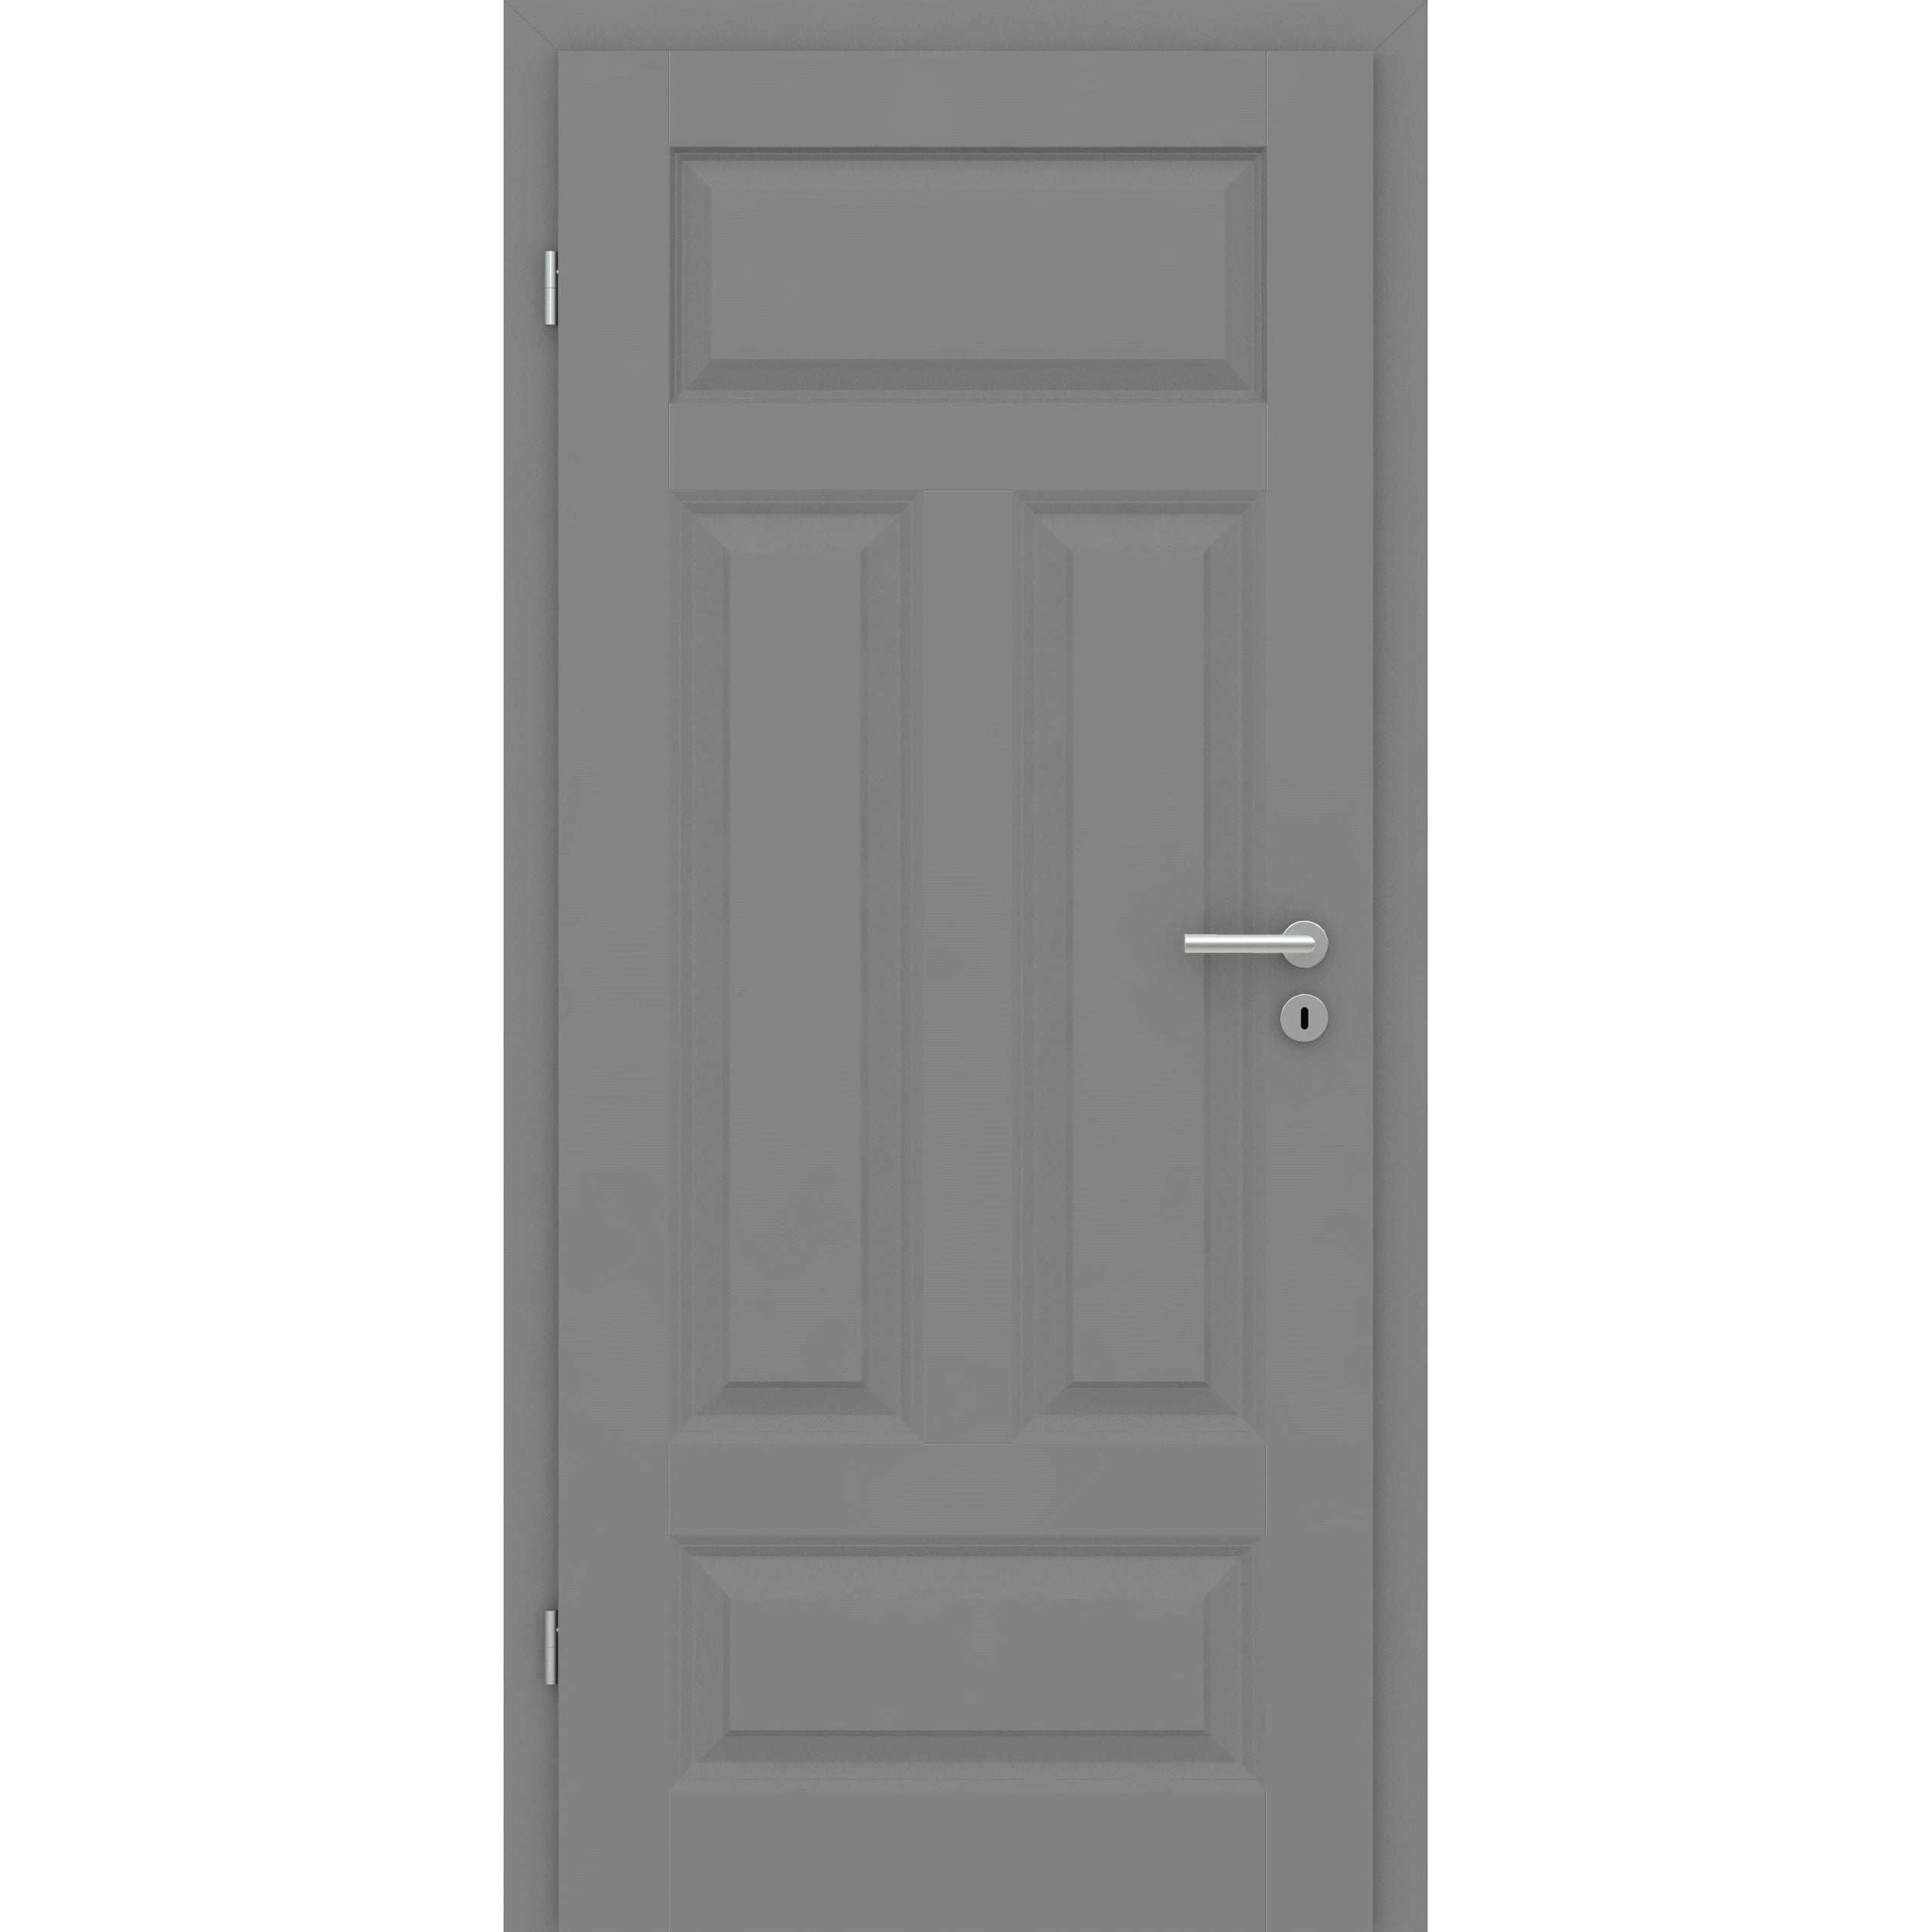 Wohnungseingangstür mit Zarge grau 4 Kassetten Quer Designkante SK1 / KK3 - Modell Stiltür KQ47